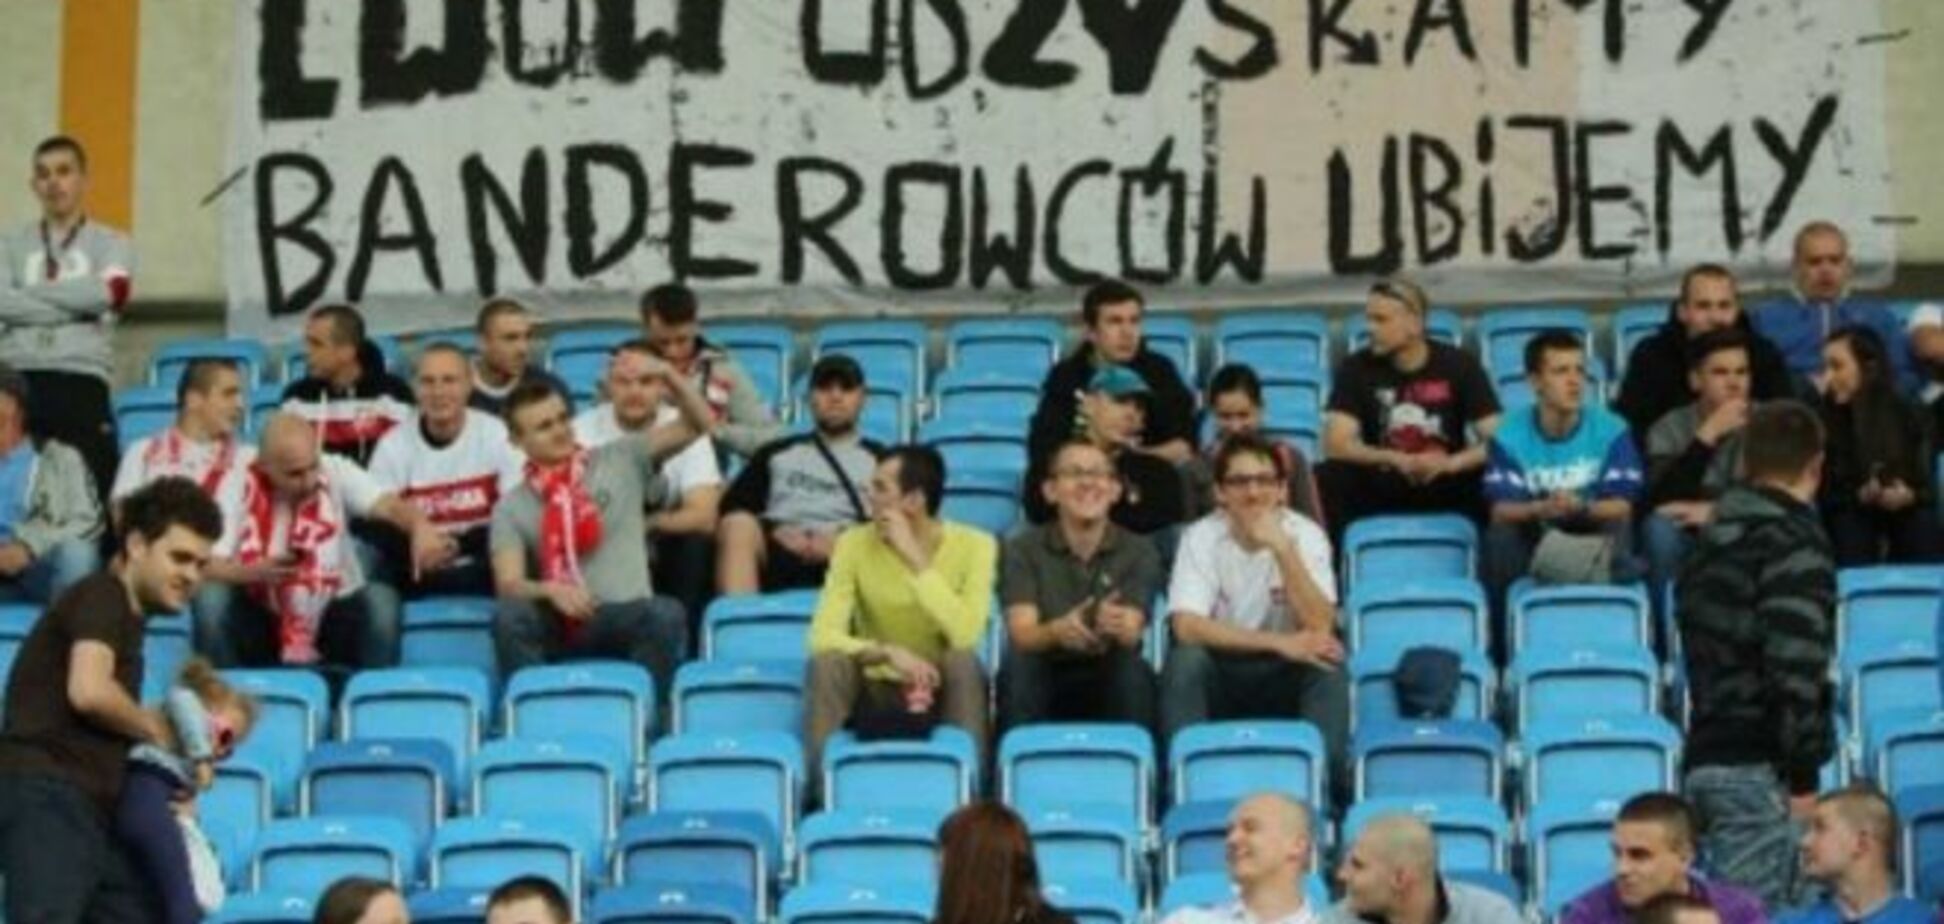 'Львов отберем, бандеровцев убьем': болельщики повесили баннер на матче в Польше